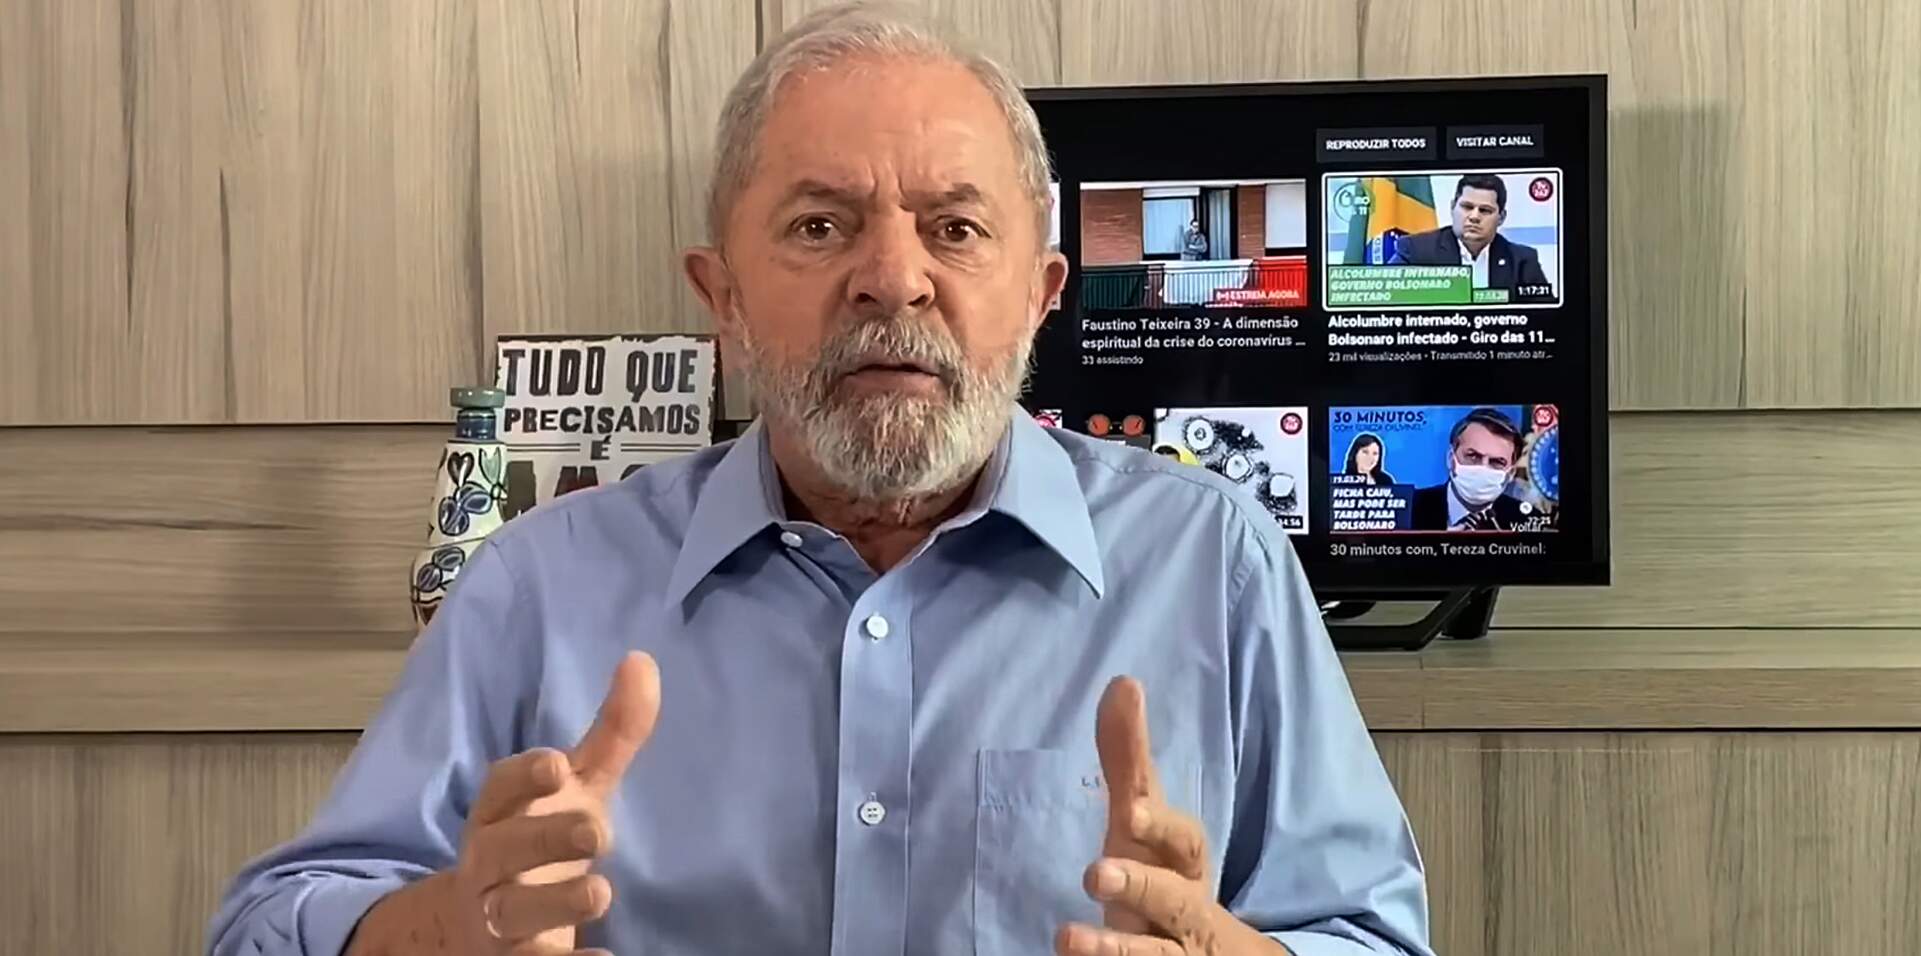 Segunda Turma do STF manda Curitiba desbloquear bens de Lula na Lava Jato